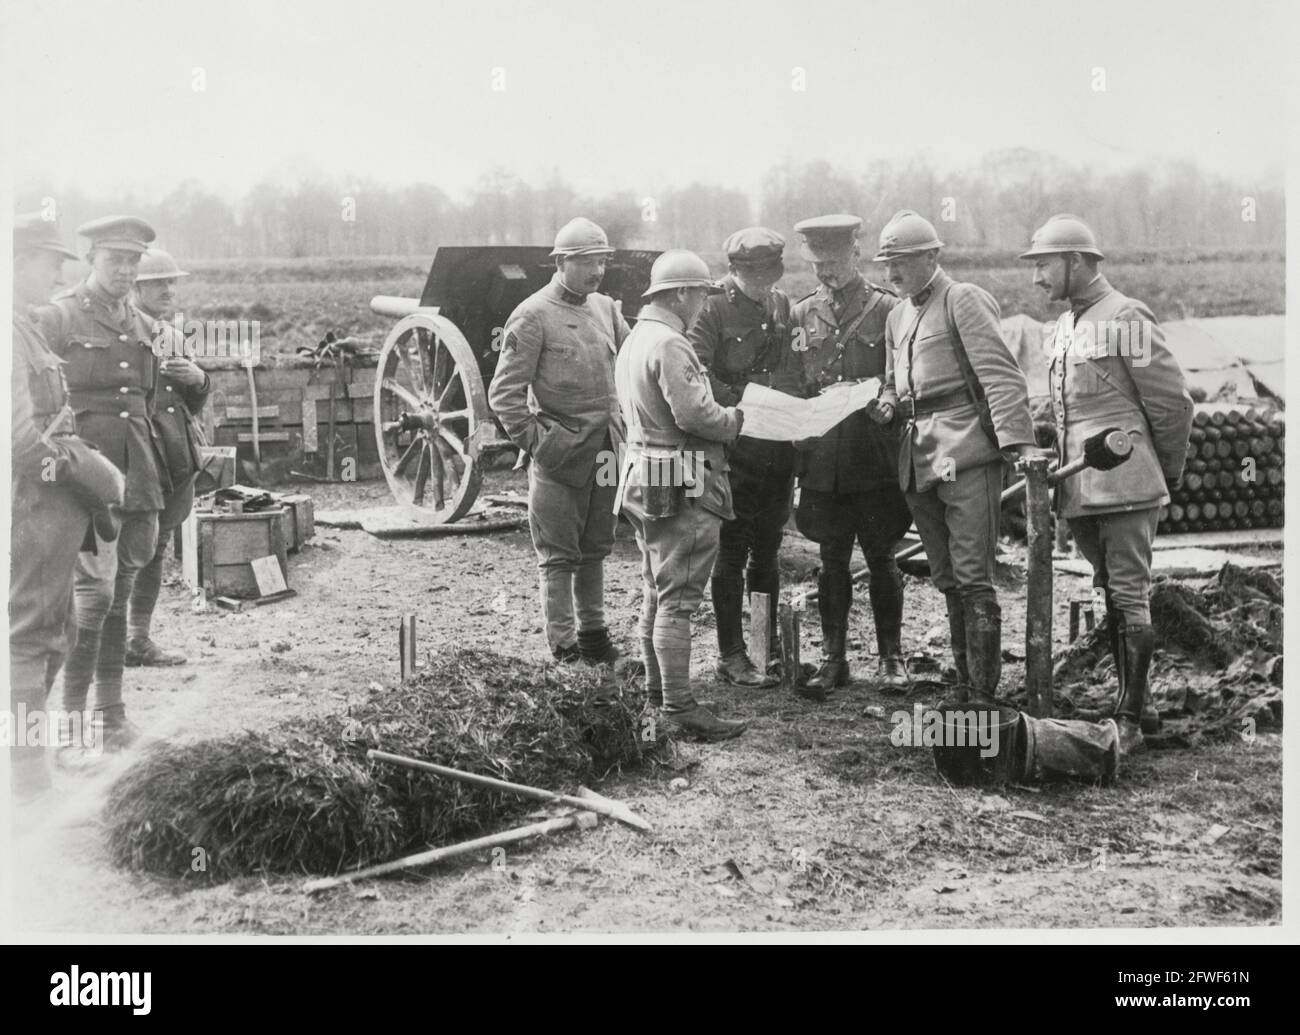 Der erste Weltkrieg, der erste Weltkrieg, die Westfront – britische und franchische Männer, die auf eine Karte schauen, Frankreich Stockfoto